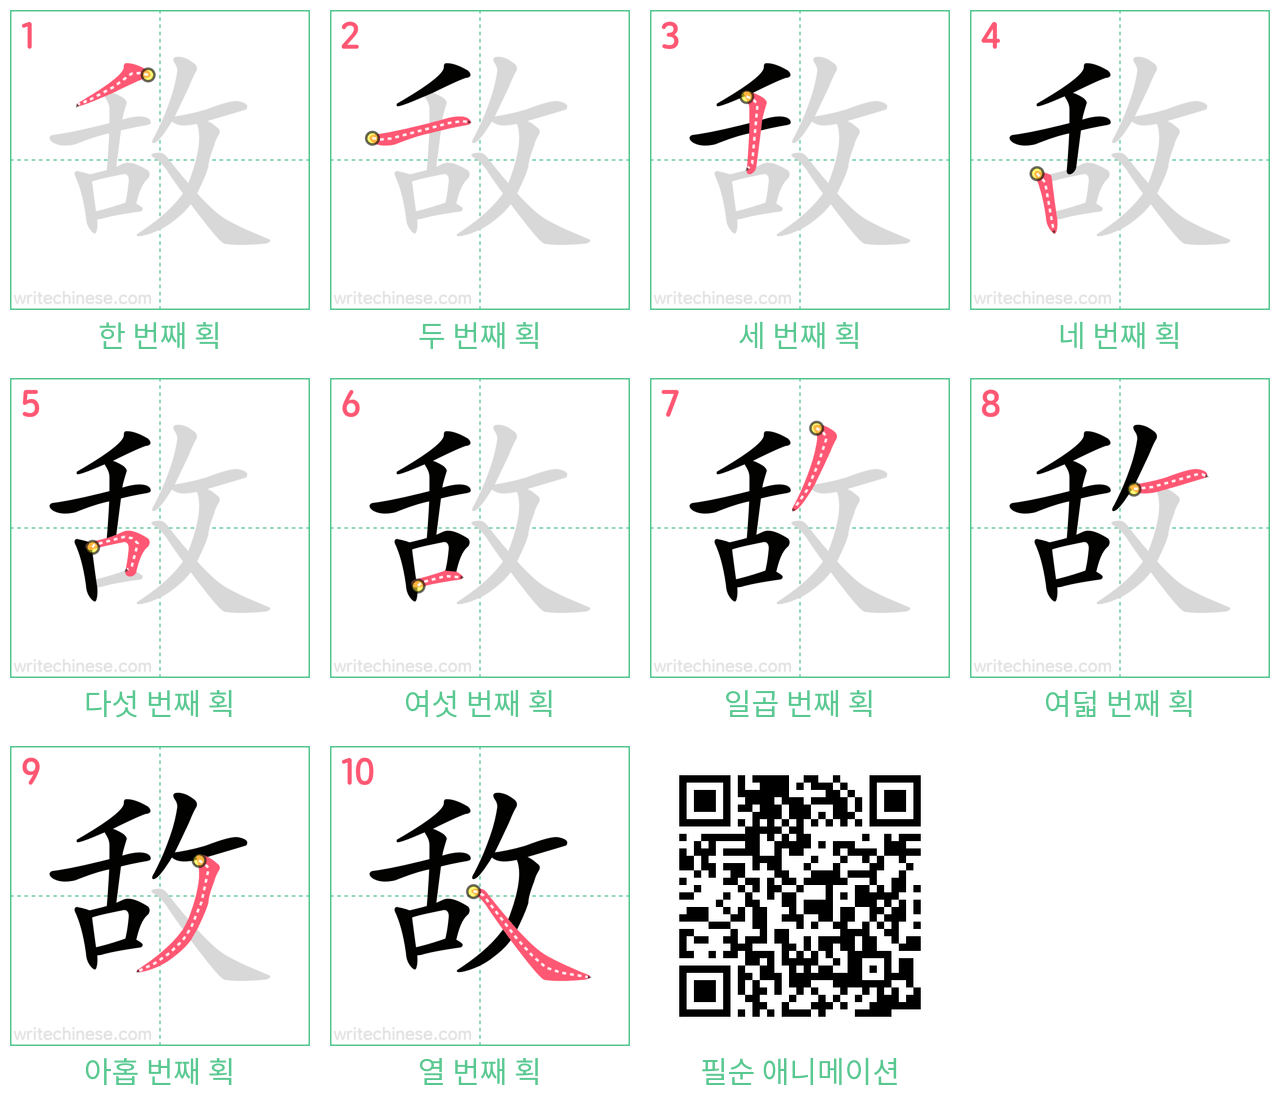 敌 step-by-step stroke order diagrams